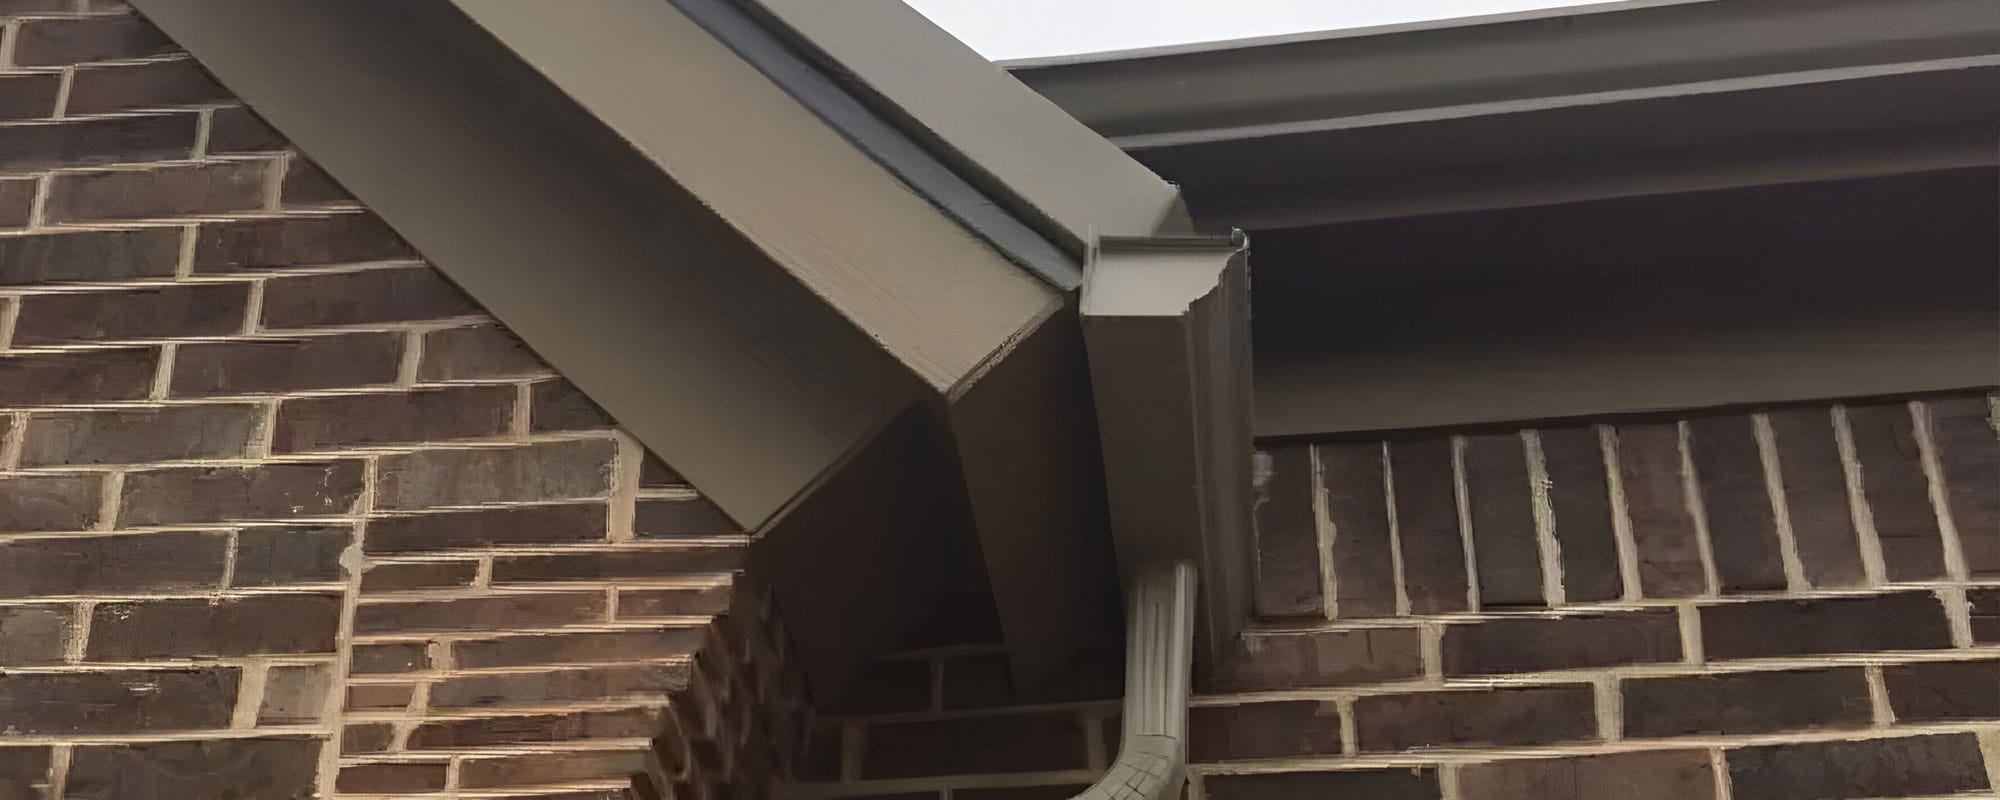 Fitz Roofing gutter installation expert